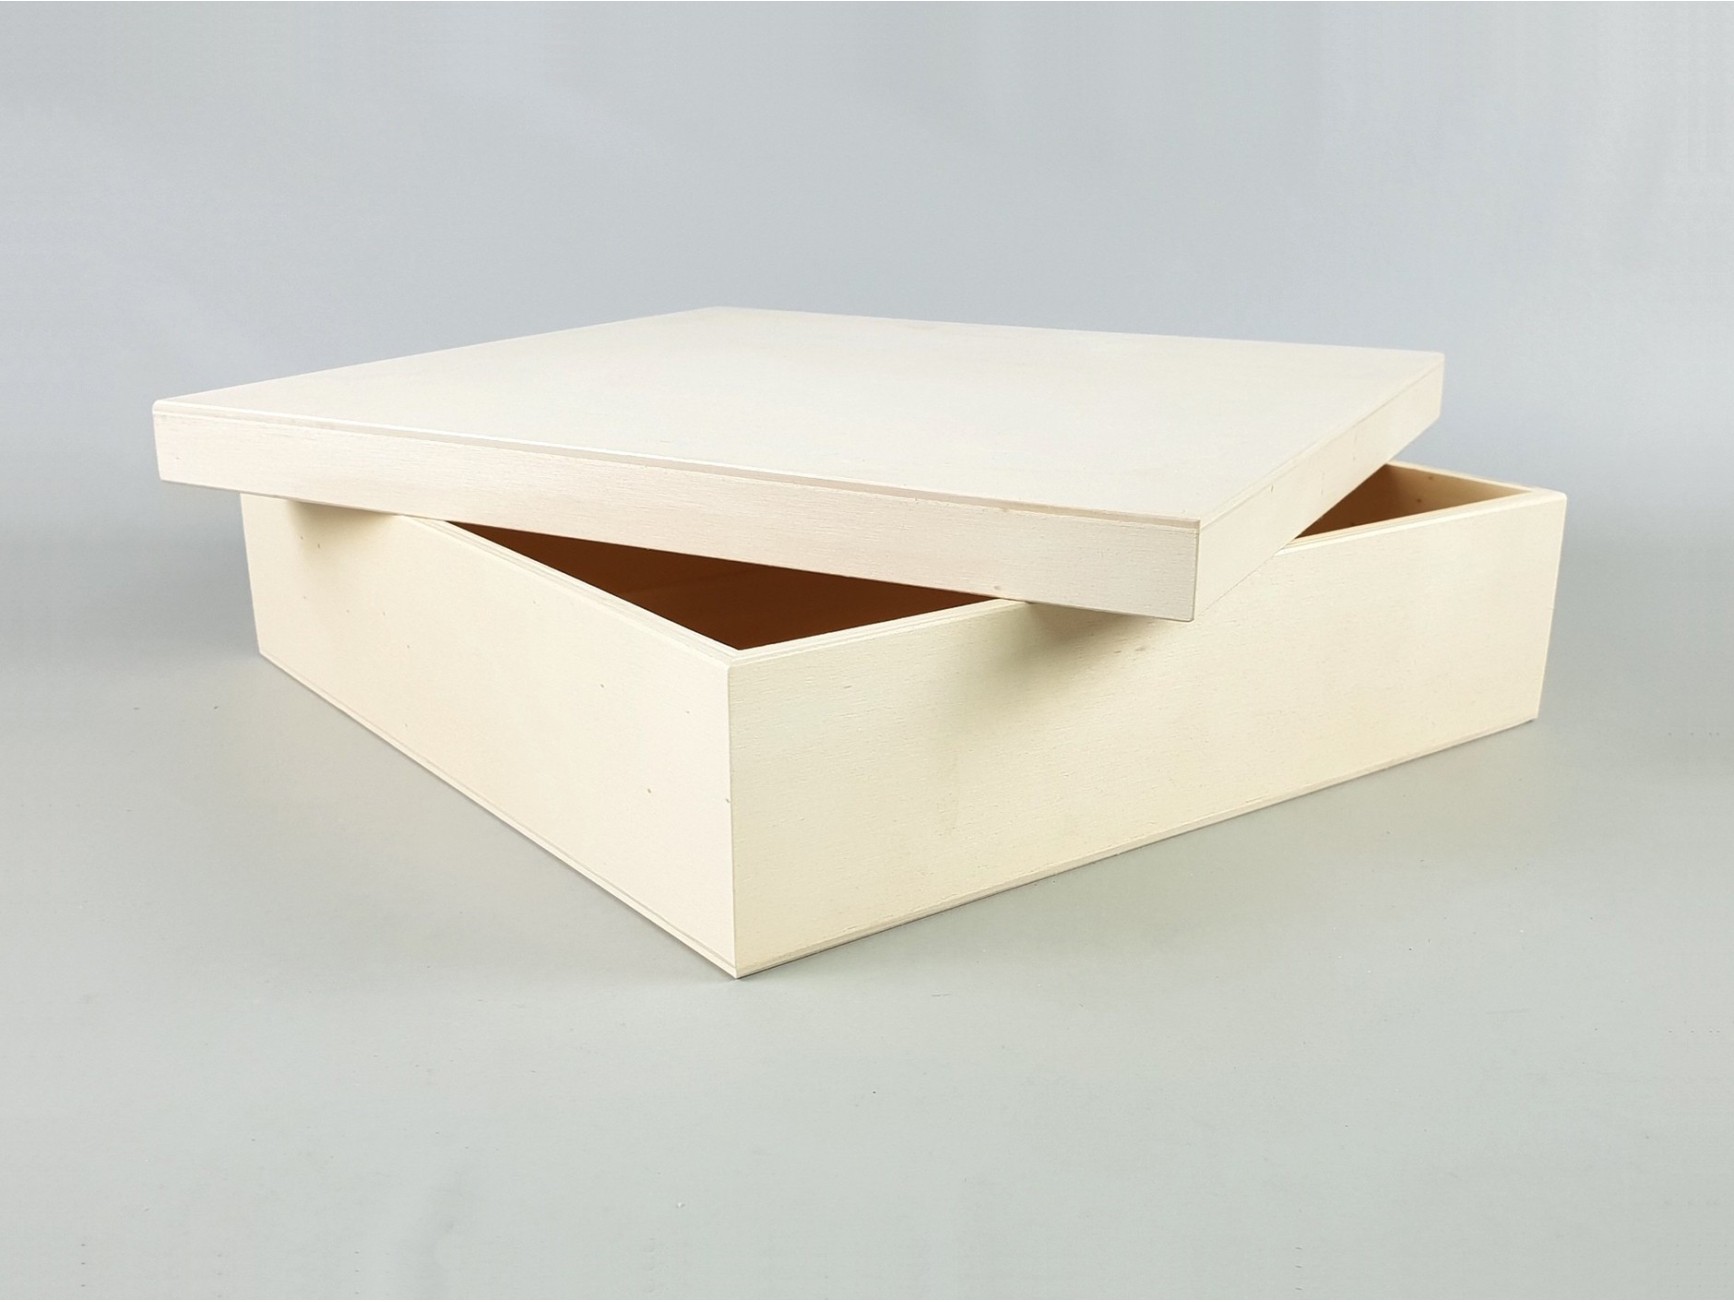 Caja cuadrada de madera grande